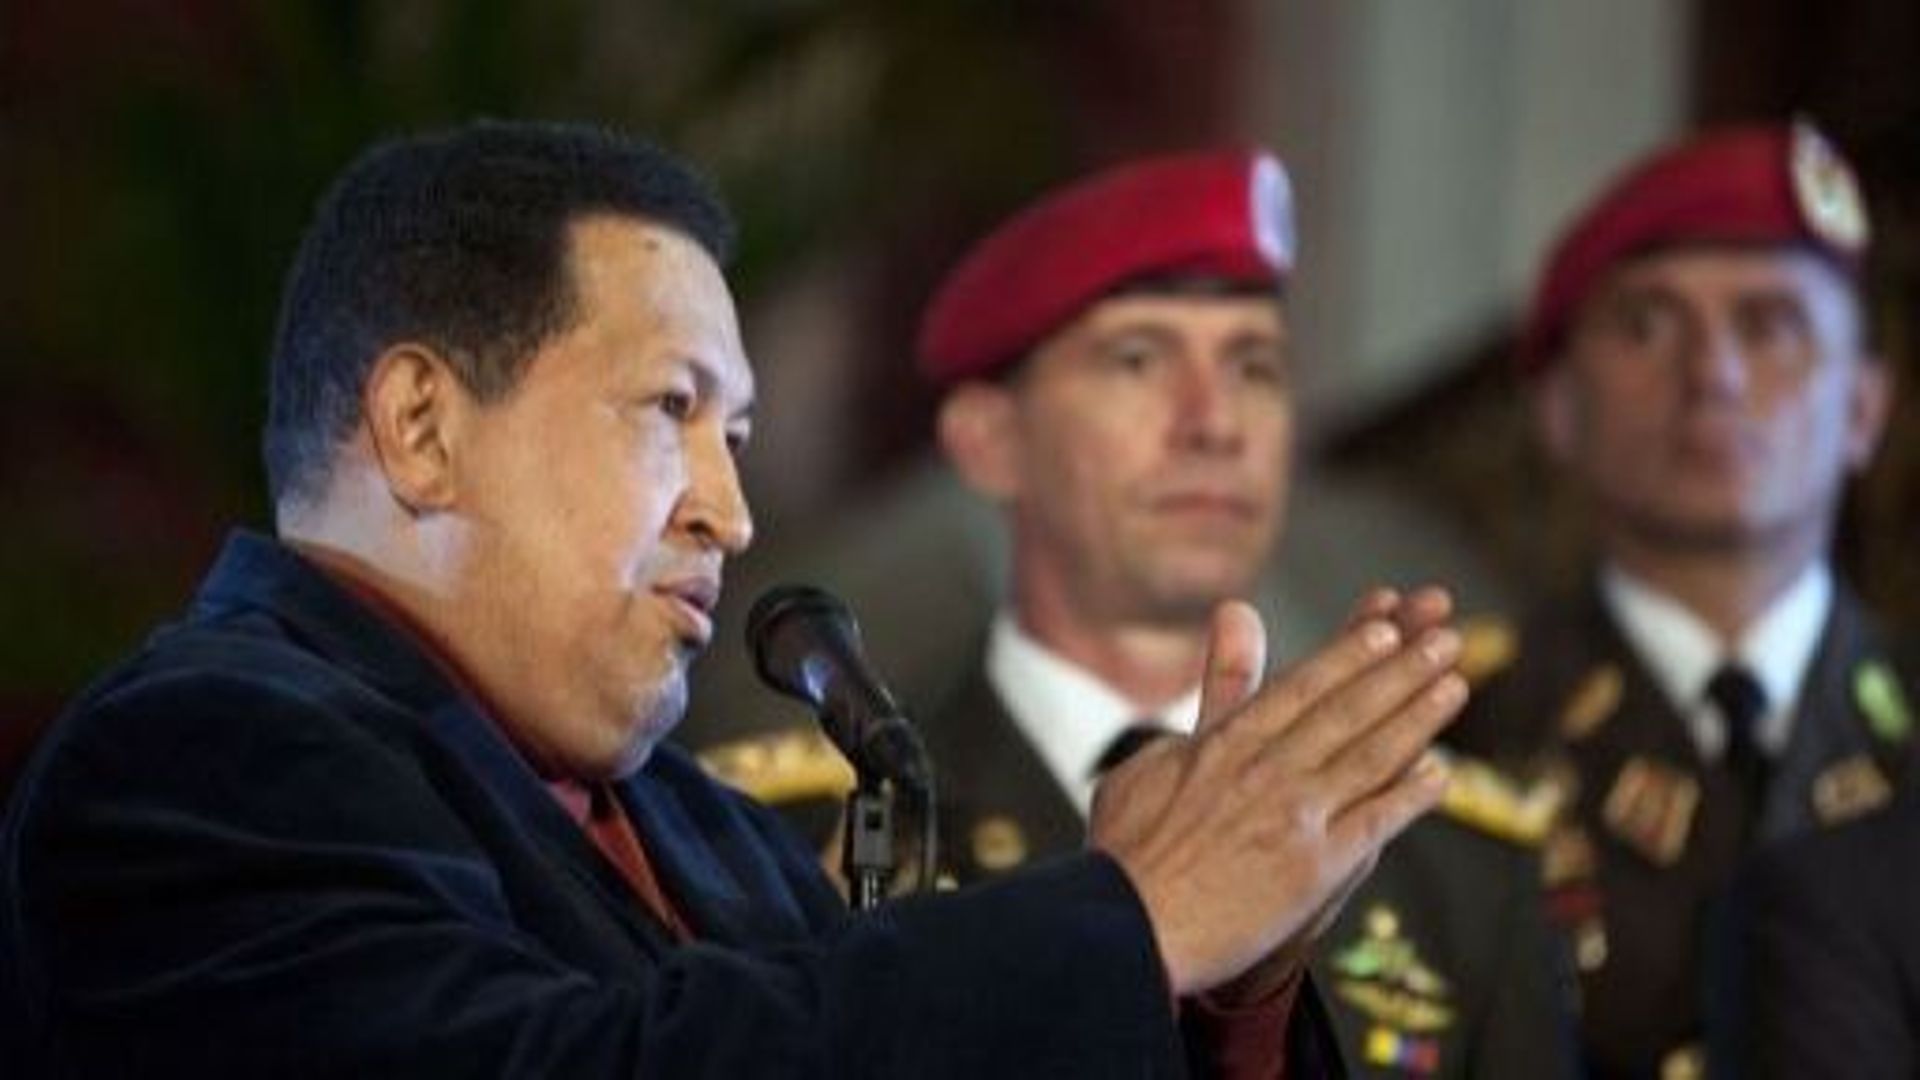 presidentielle-au-venezuela-chavez-face-a-son-plus-grand-defi-electoral